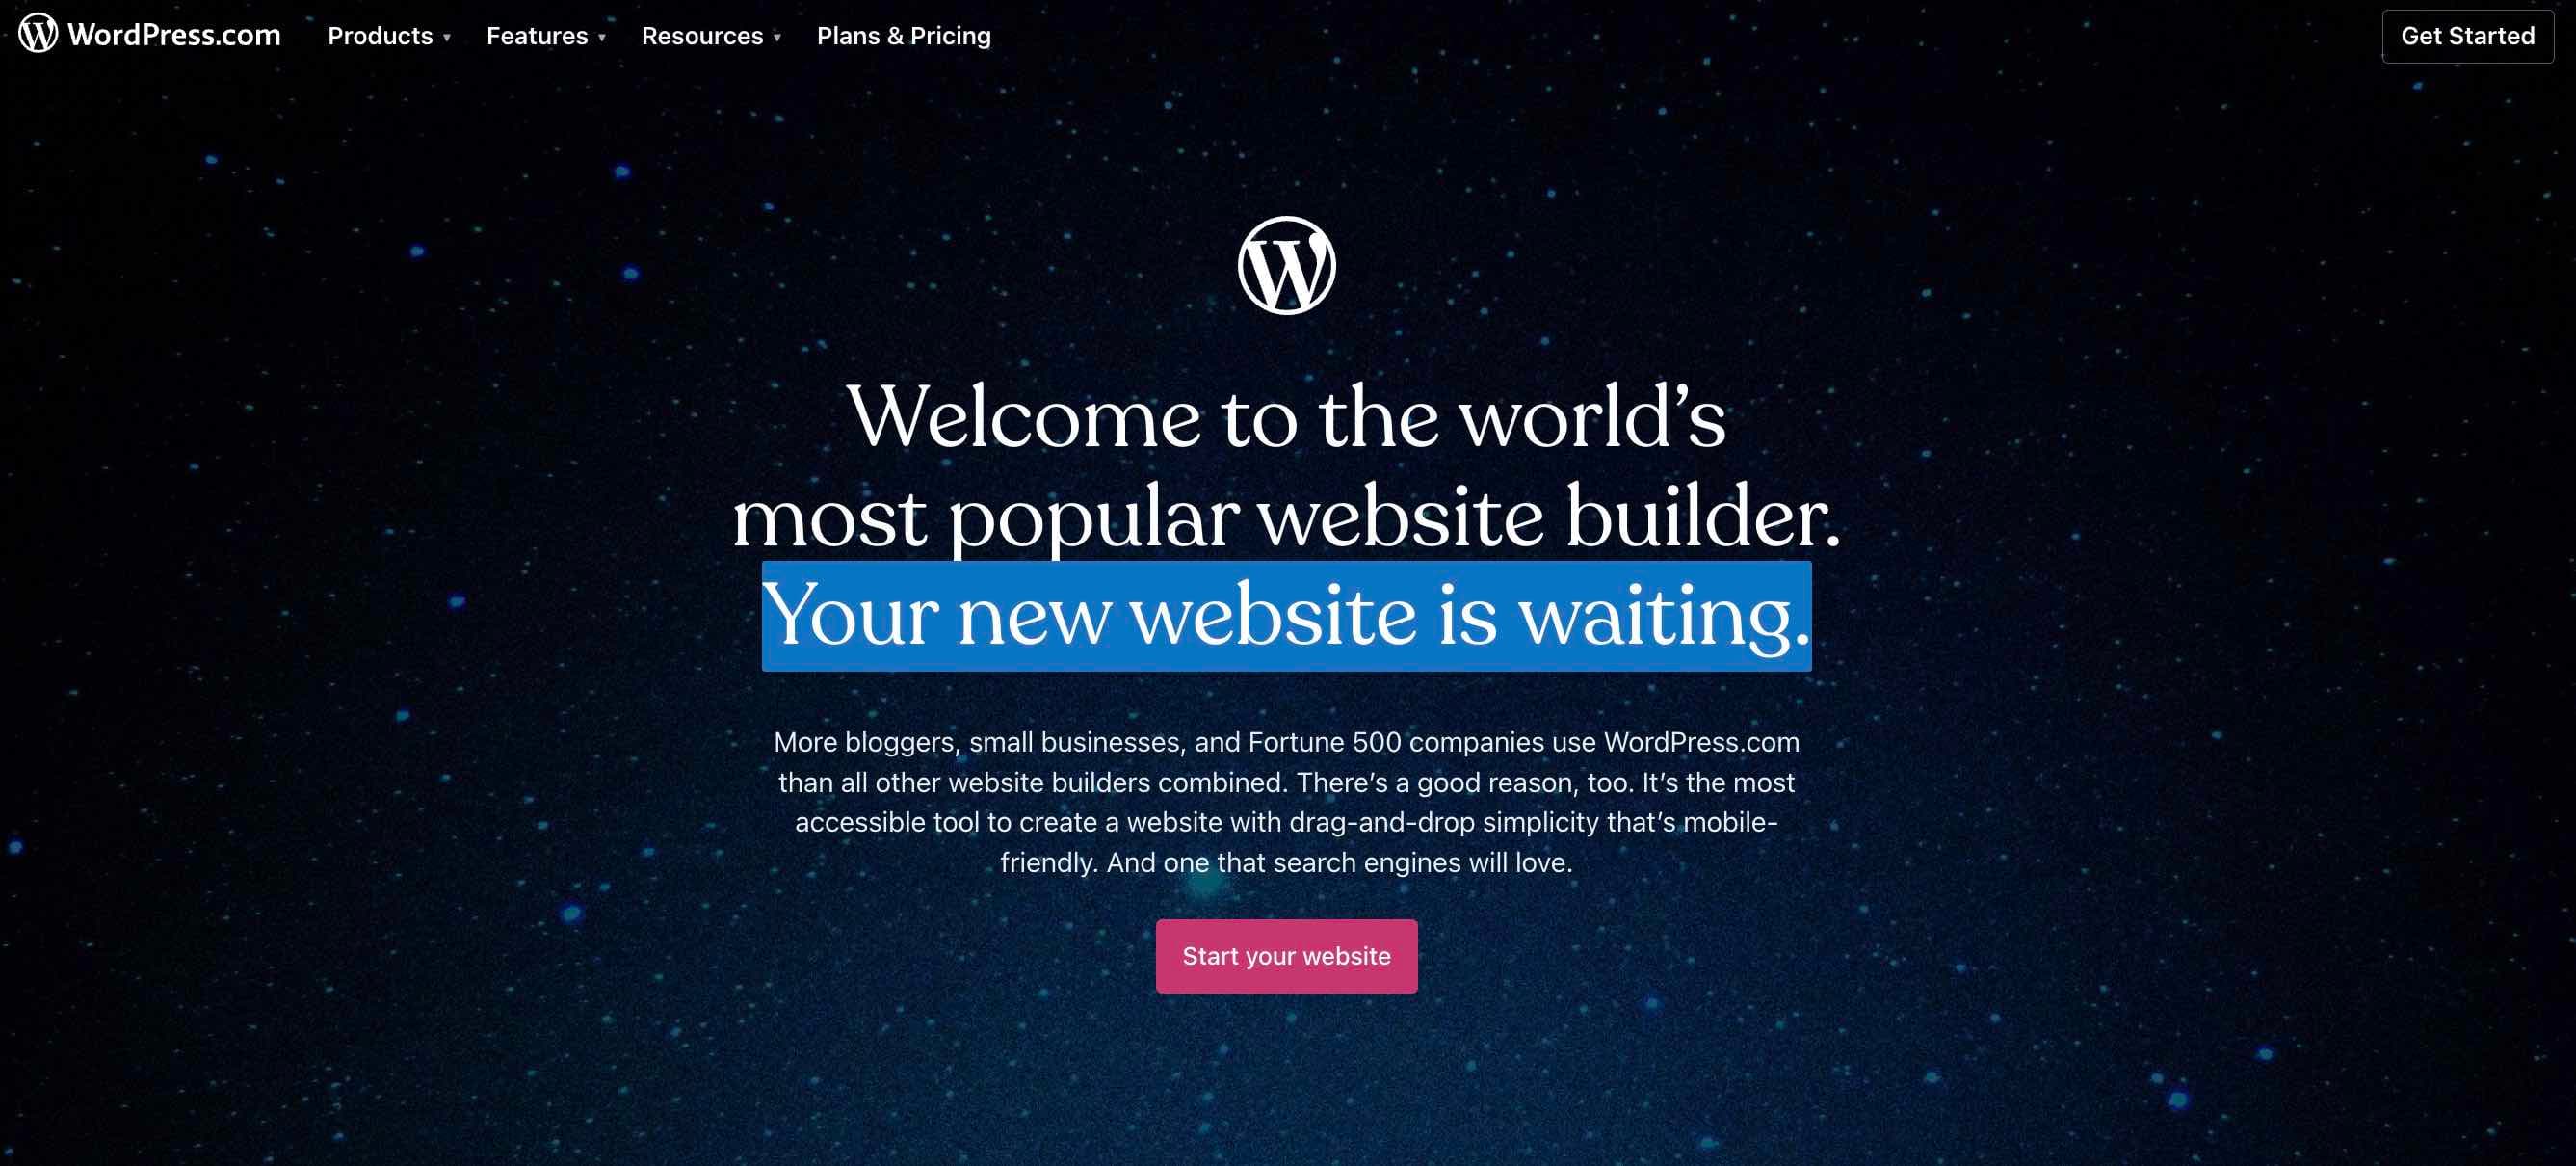 free website builder wordpress%20(1).jpg?width=2674&height=1210&name=free website builder wordpress%20(1) - 17 of the Best Free Website Builders to Check Out in 2023